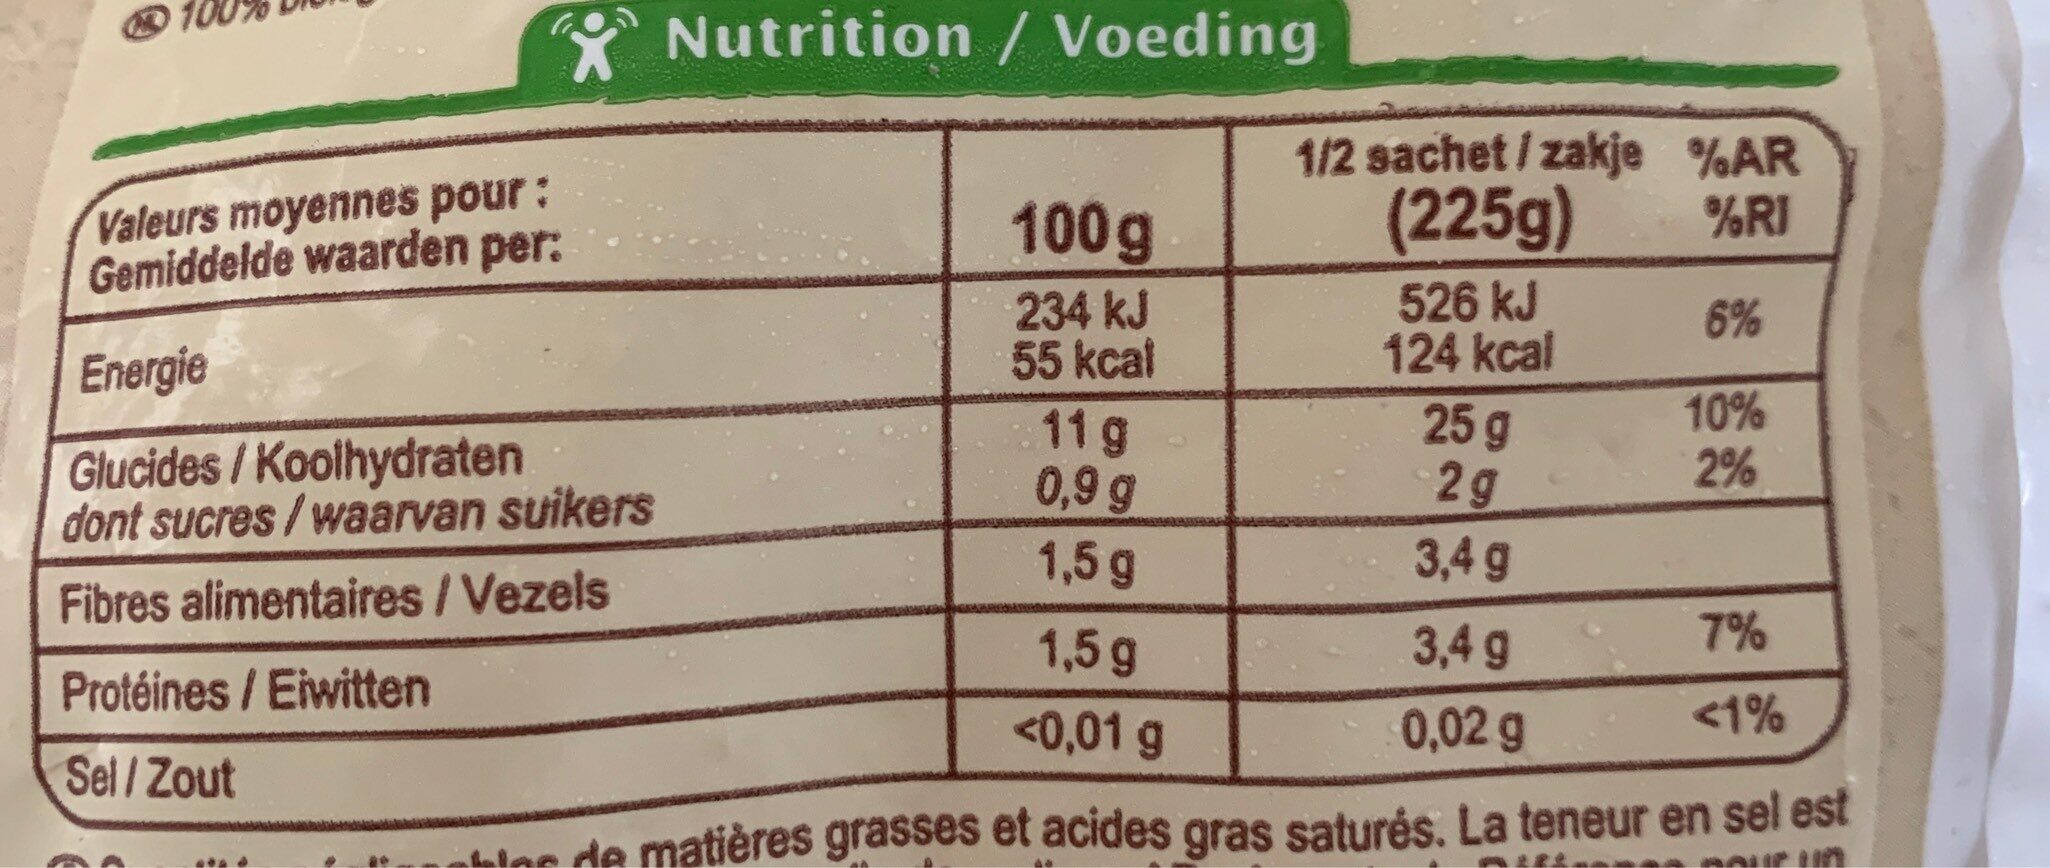 Purée de pommes de terre - Tableau nutritionnel - fr